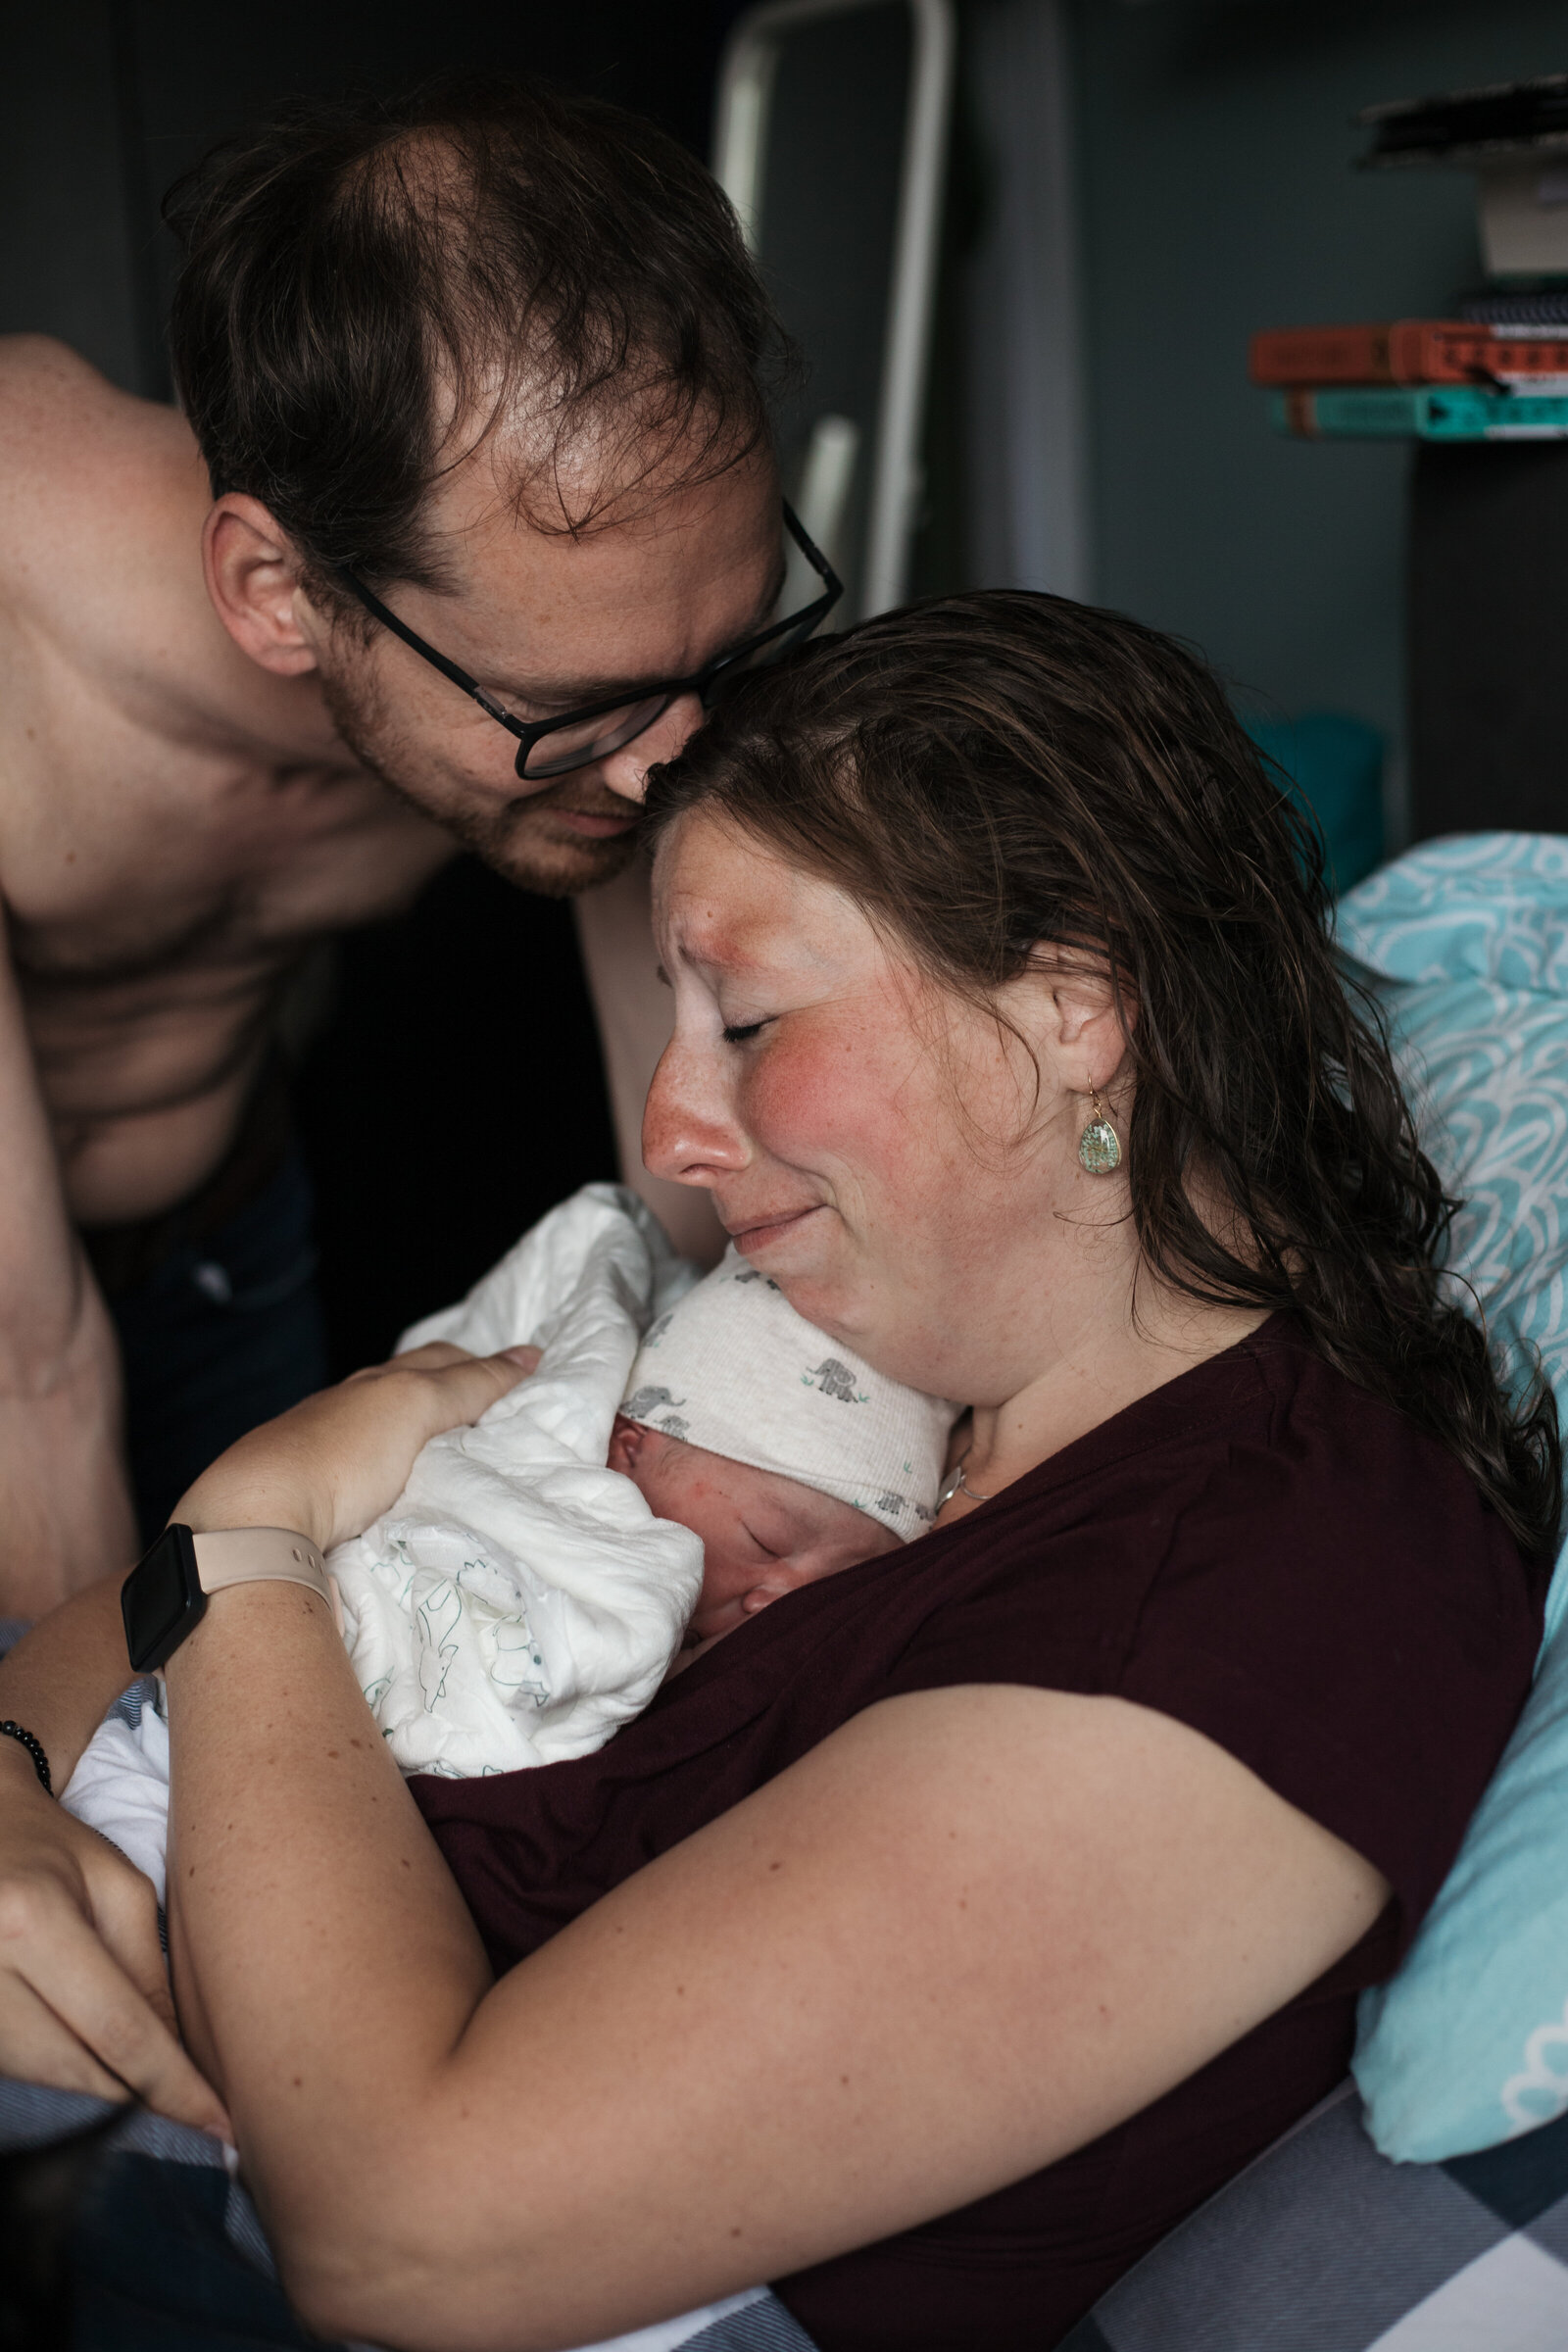 bevallingshoot bevallingfotograaf bevallingfoto bevalling nieuwegein utrecht-18